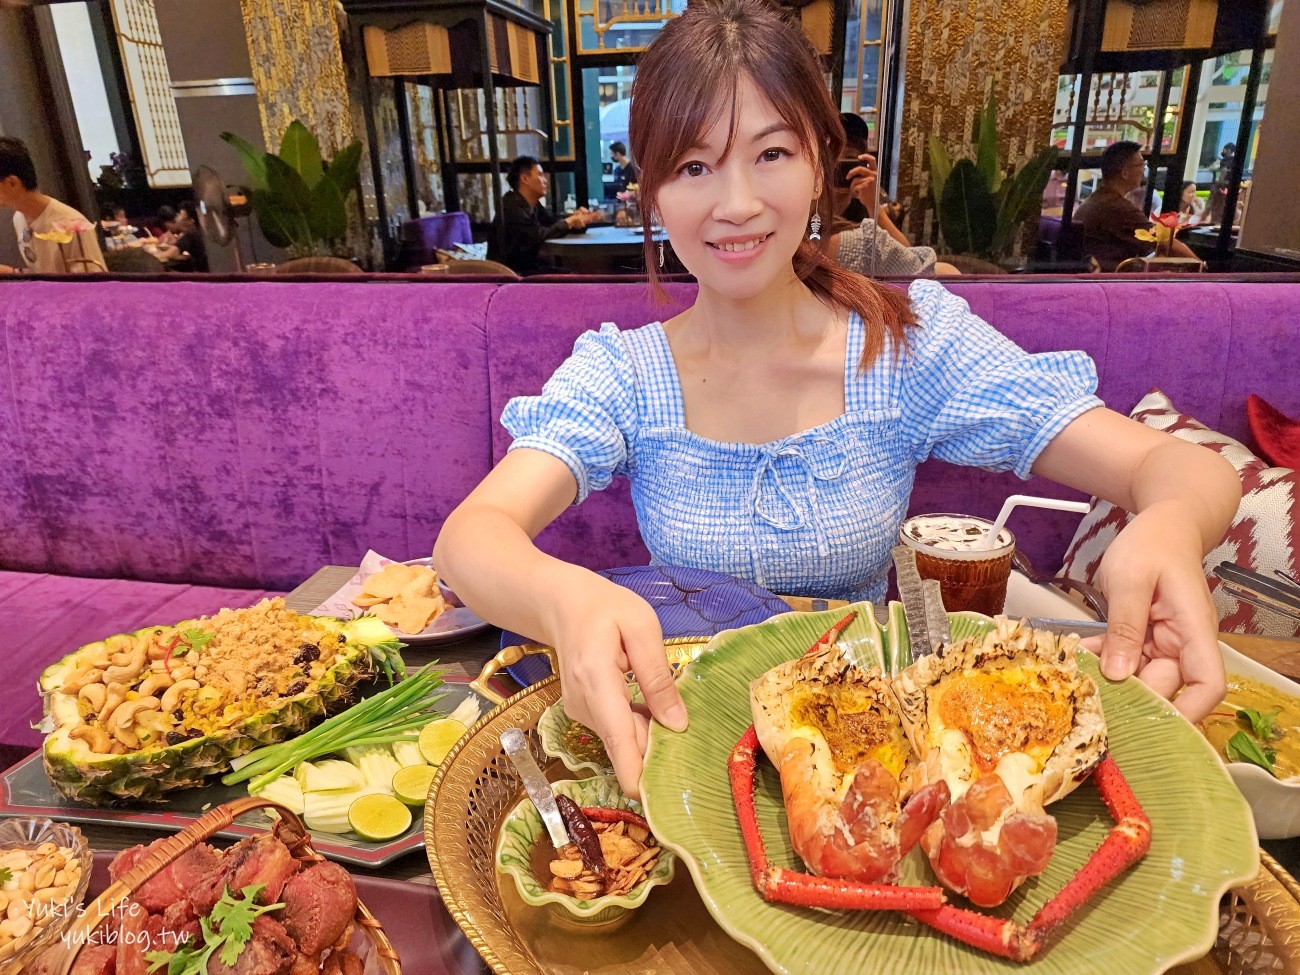 泰國曼谷必吃美食》Nara Thai Cuisine，推薦來吃這家泰式料理餐廳不踩雷~ - yukiblog.tw